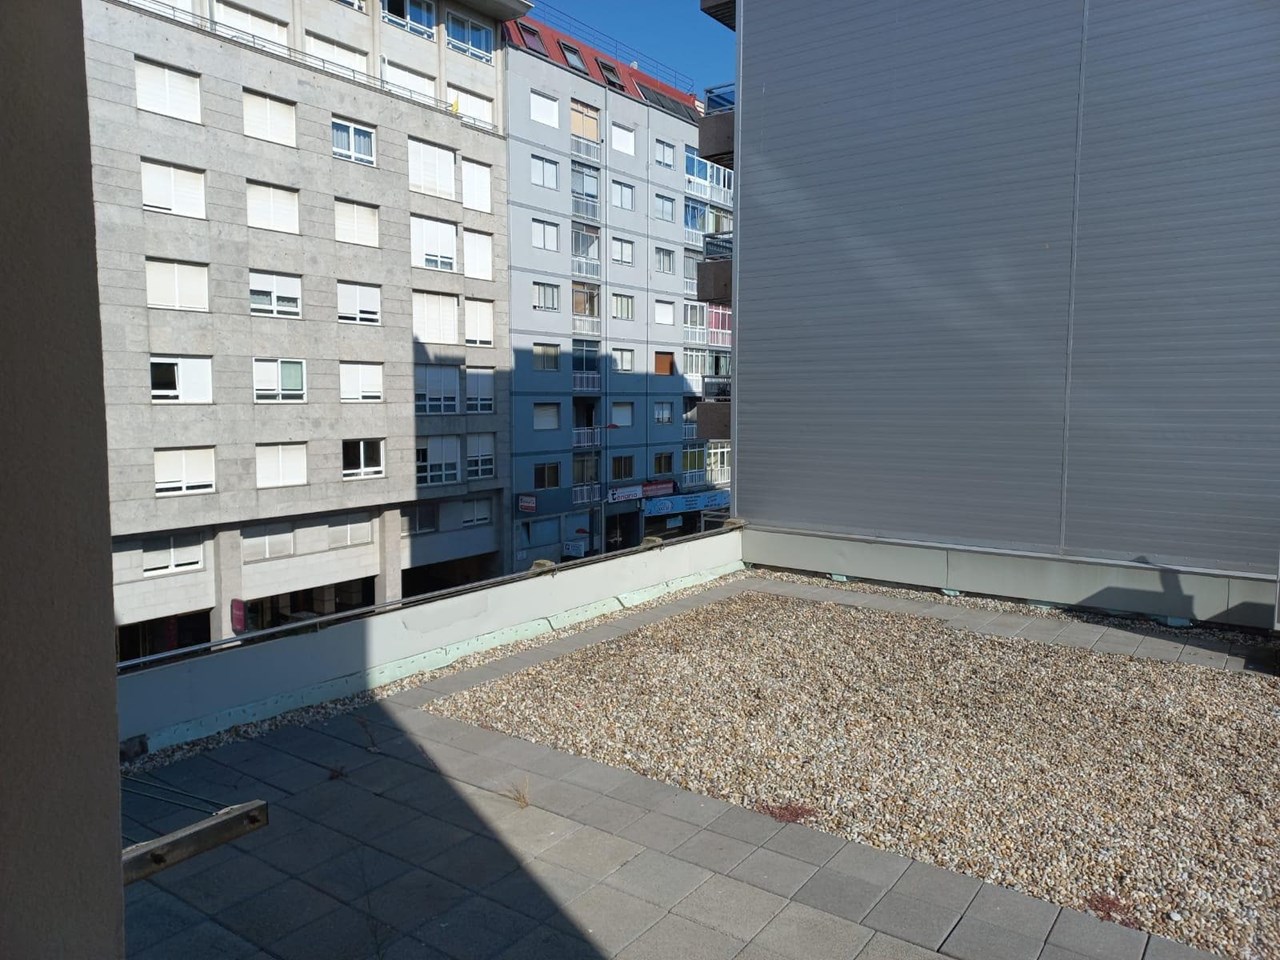 Foto 17 Coruña, 4 dormitorios + 1 dormitorio, despacho, 2 baños + aseo